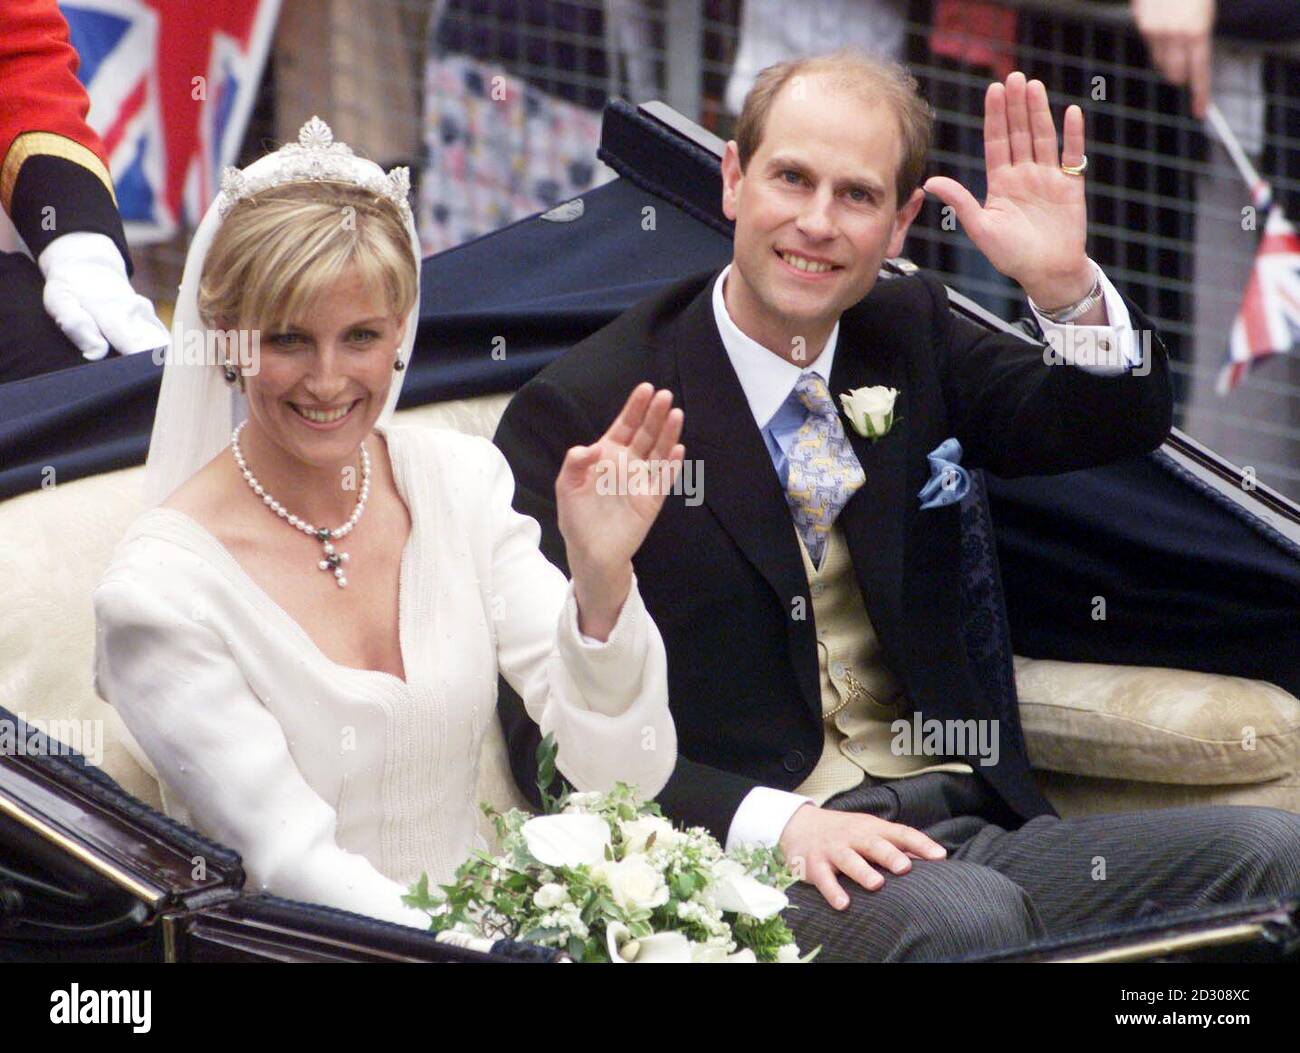 Ein lächelnder Prinz Edward und Sophie Rhys-Jones winken nach ihrer Hochzeit in der St. George's Chapel in Windsor Castle zu den Massen. Das königliche Paar wird nach ihrer Ehe als Graf und Gräfin von Wessex bekannt sein. Stockfoto